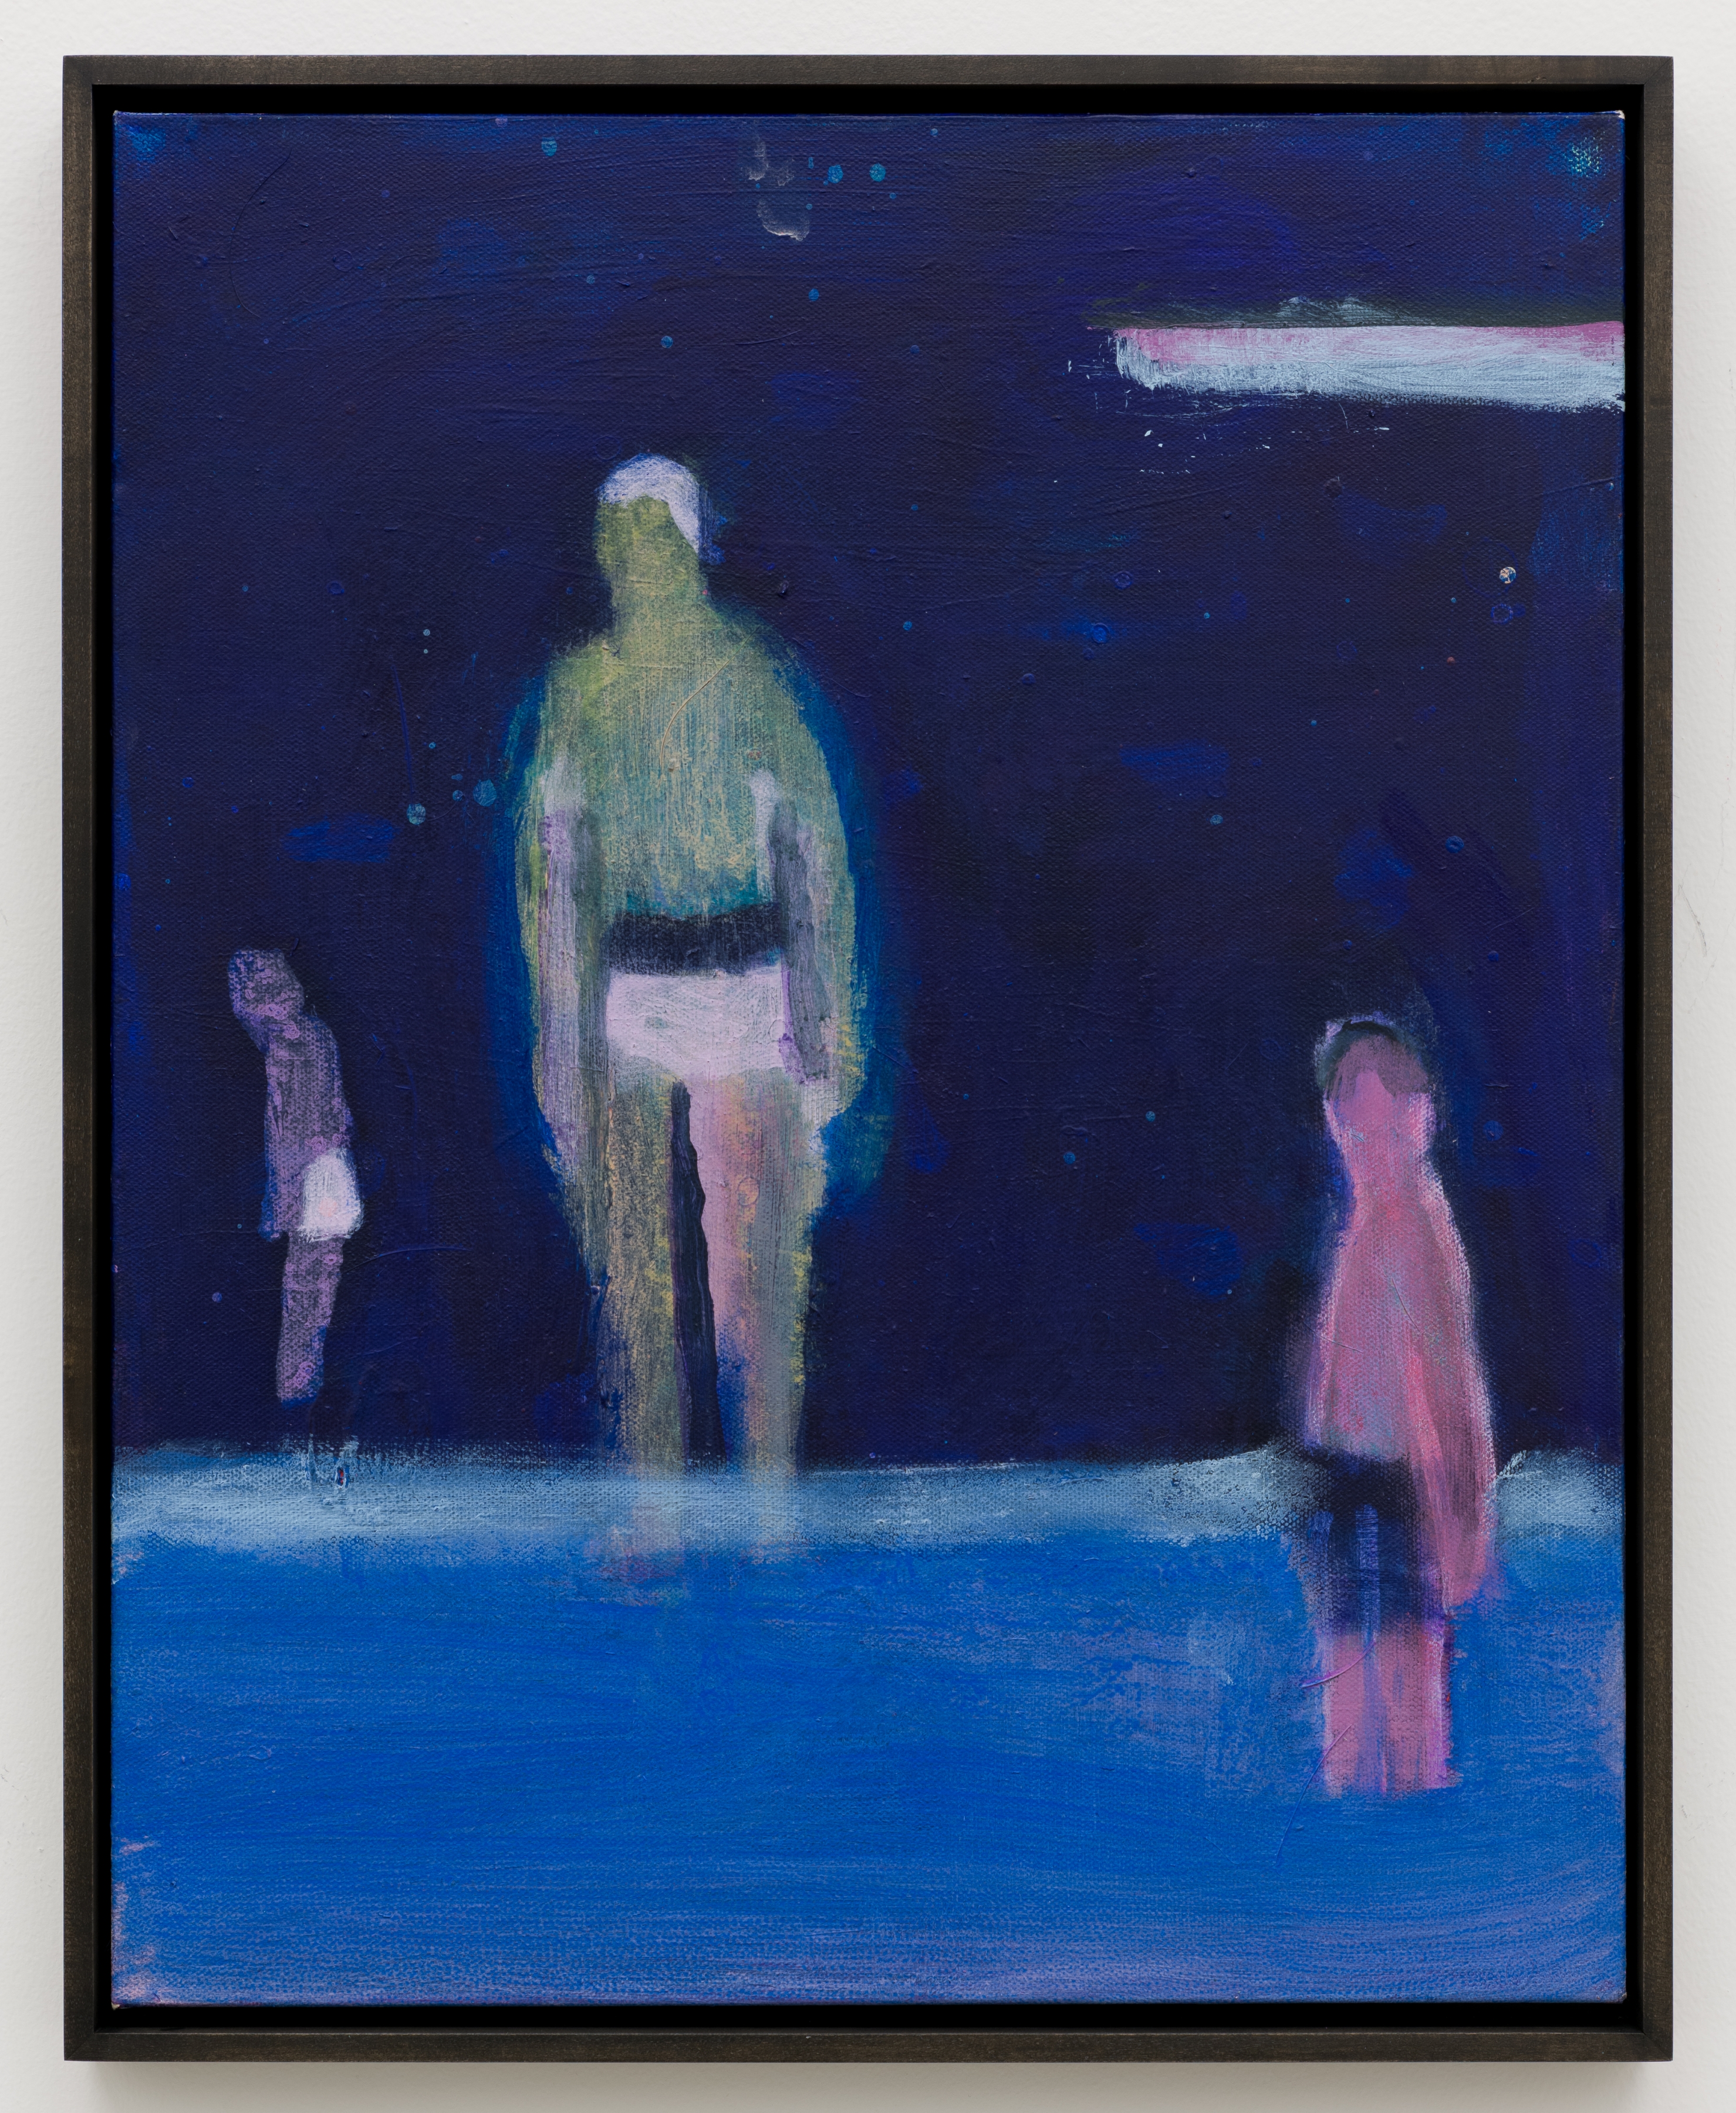 Katherine Bradford,&amp;nbsp;Dark Swim, 2021;&amp;nbsp;acrylic on canvas,&amp;nbsp;20h x 16w in,&amp;nbsp;50.80h x 40.64w cm

Inquire